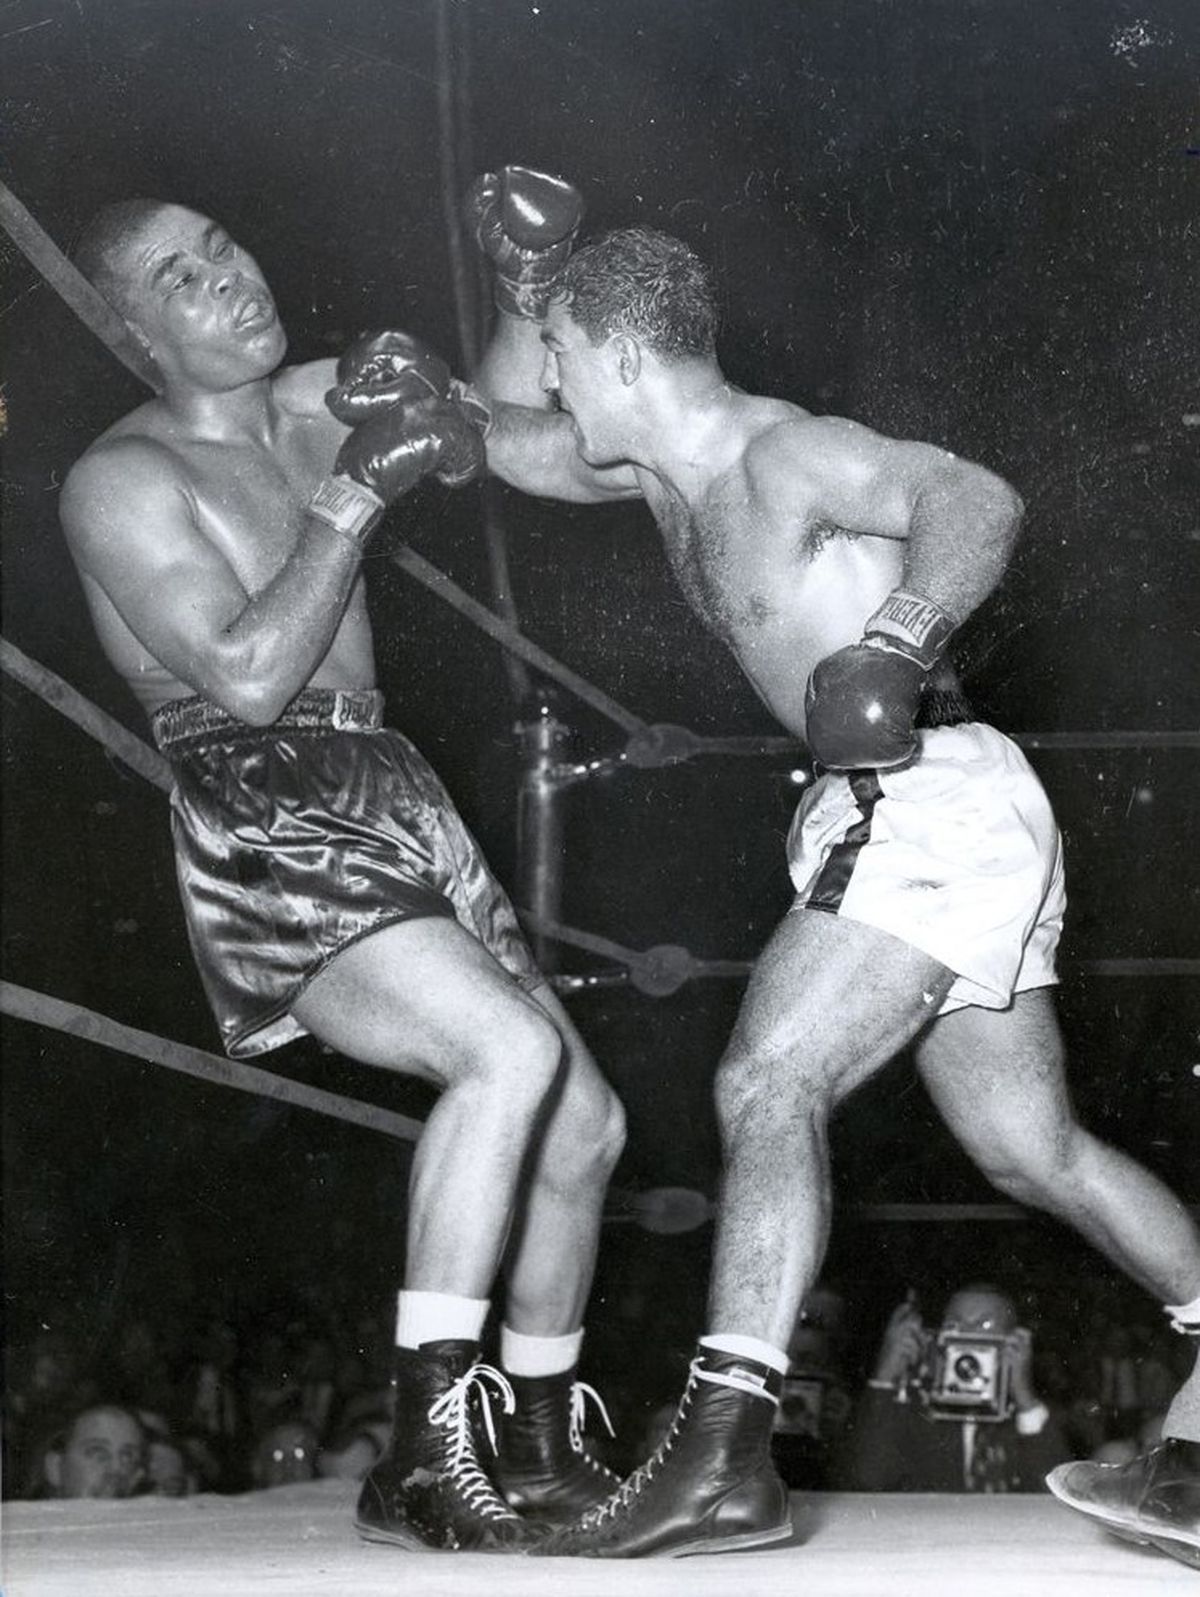 El 26 de octubre de 1951, Marciano, de 28 años, le GKOT 8 en el Madison Square Garden al legendario Joe Louis, de 37 y ex monarca pesado. La victoria dejó sensaciones encontradas en Rocky, quien lloró tras noquear al fenomenal moreno, que había sido su ídolo de la infancia.